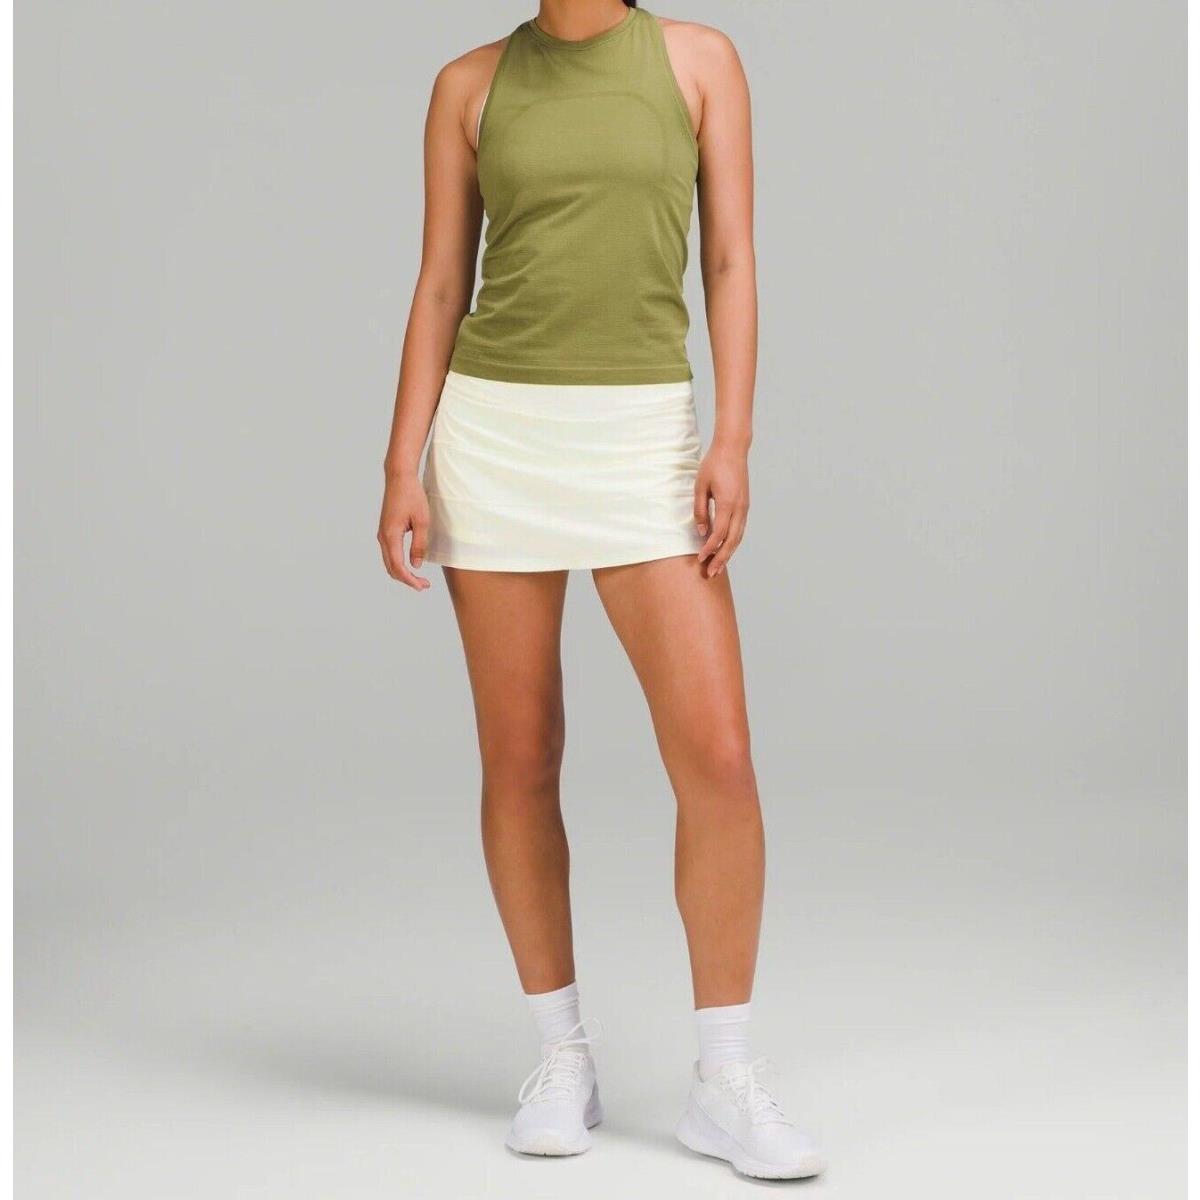 Lululemon Pace Rival Mid-rise Skirt - Long - Size 14 Lemon Sorbet Lmsb